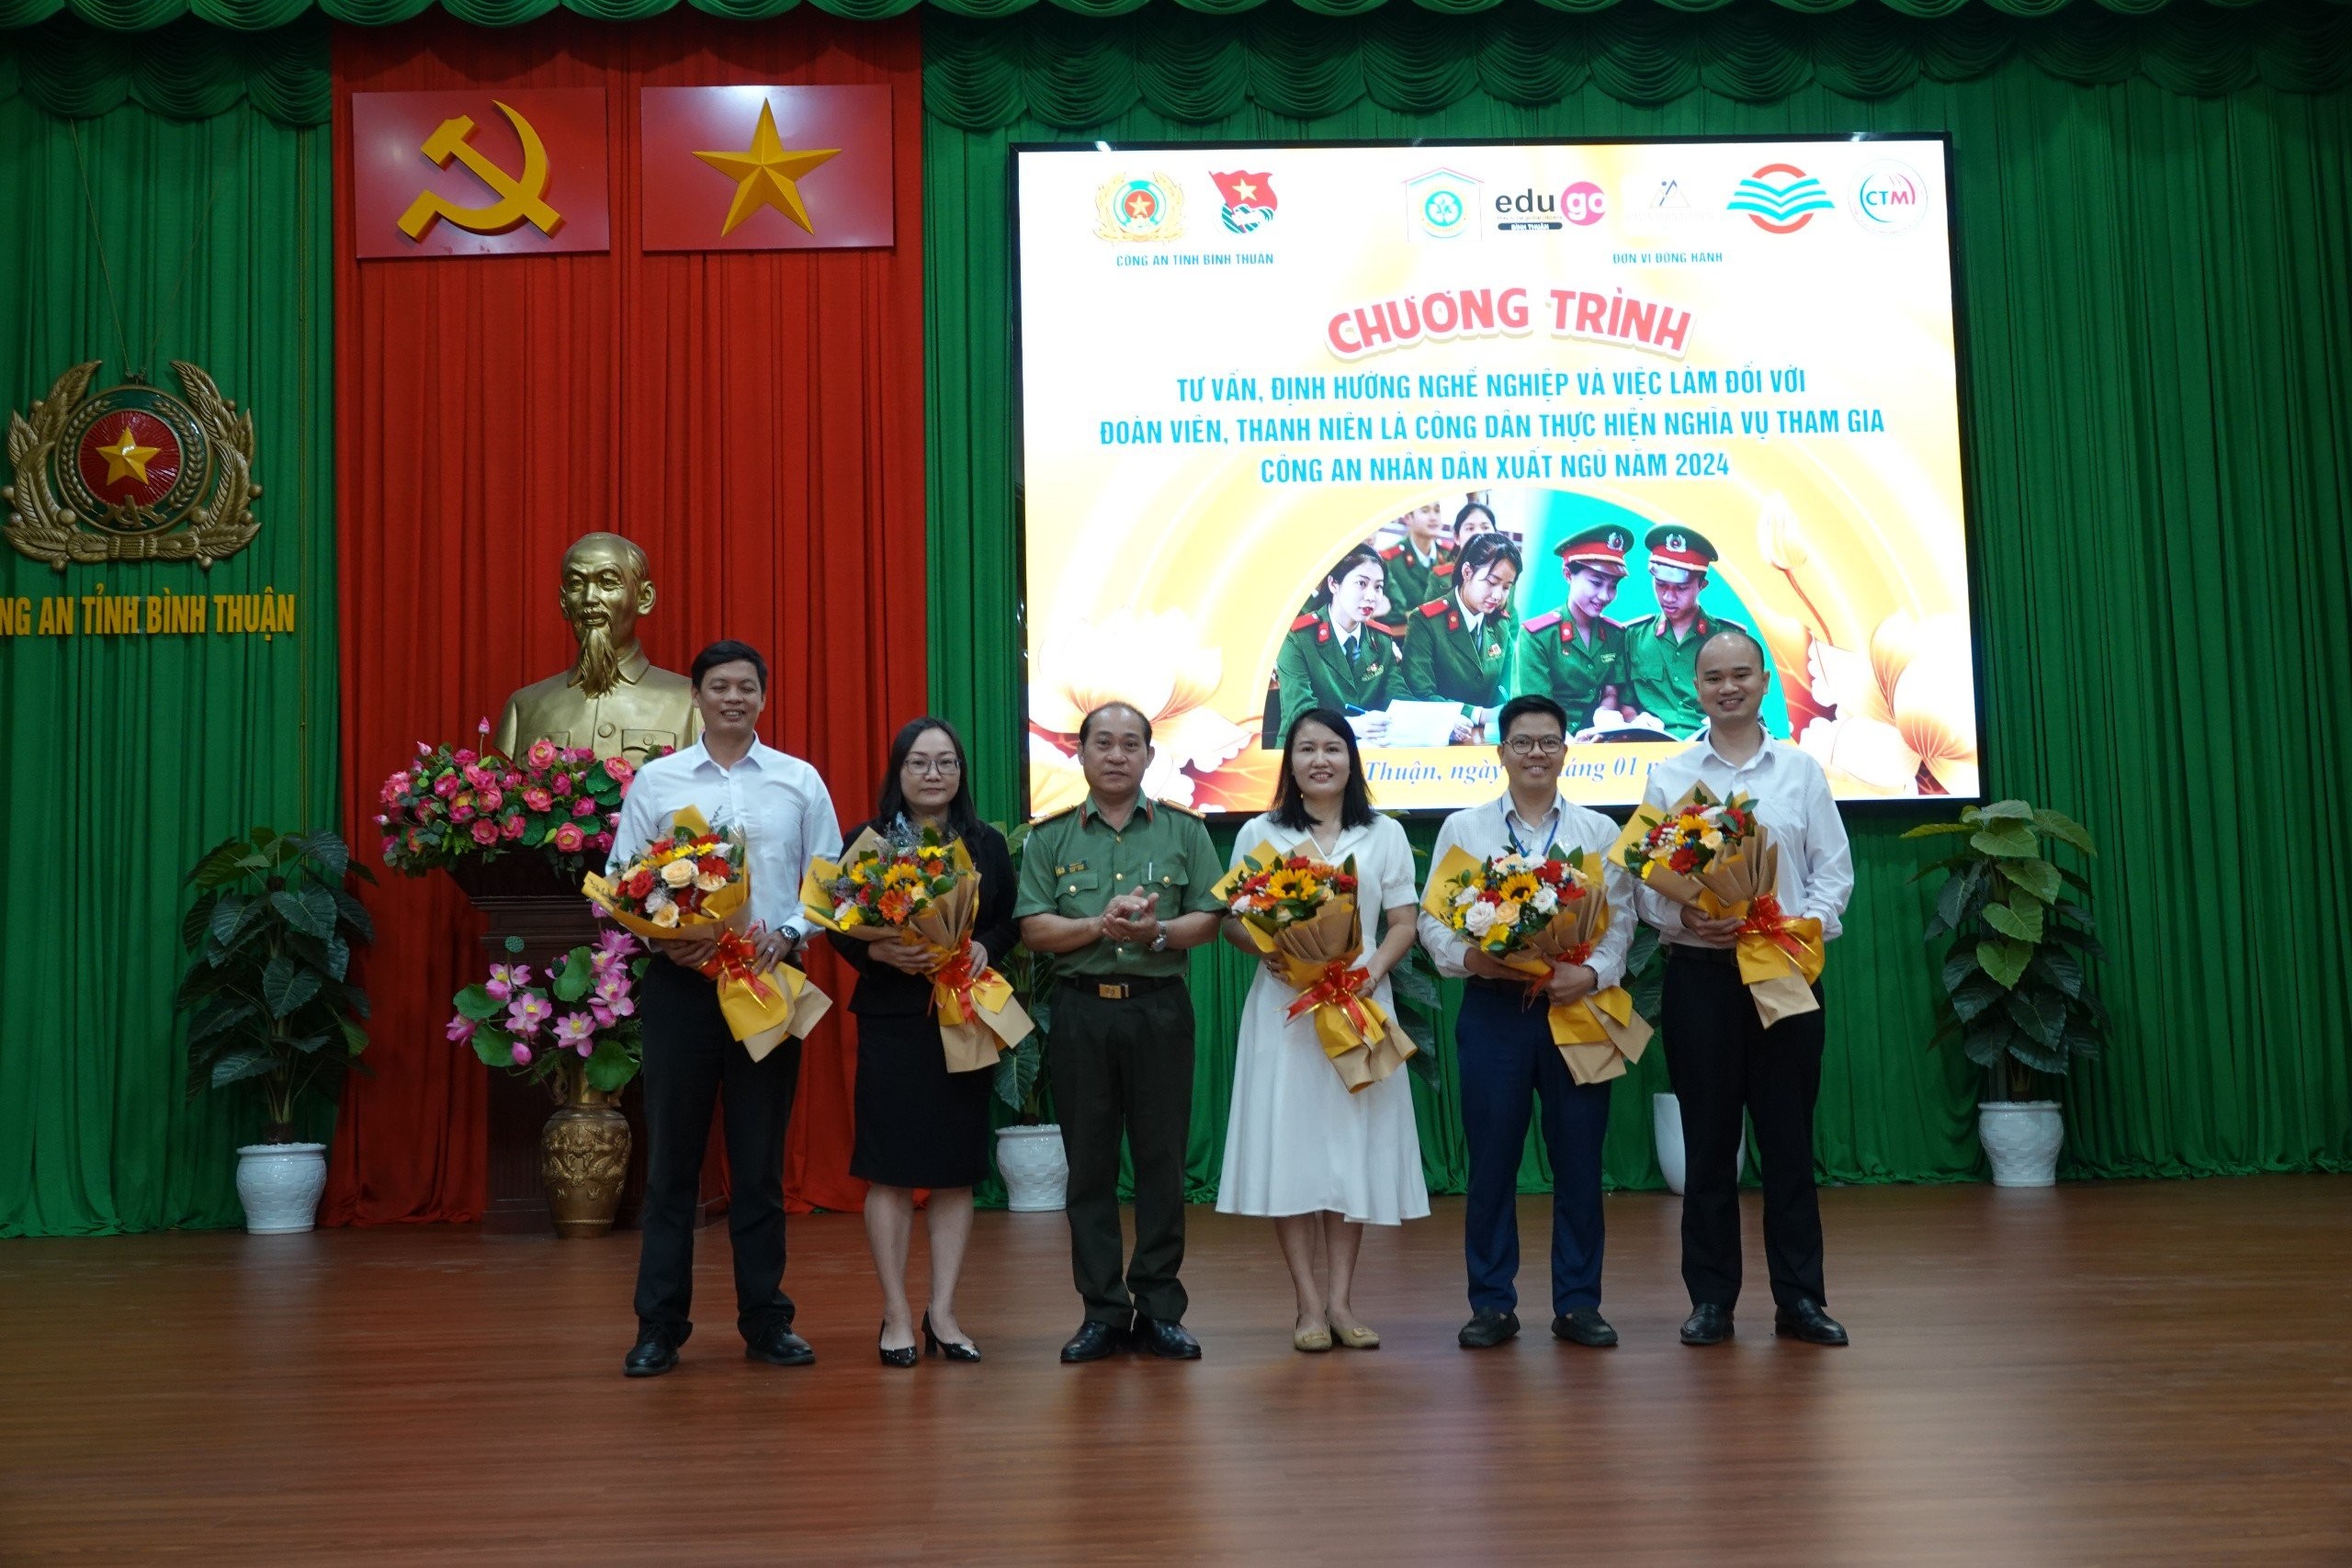 VPTS Bình Thuận - Tư vấn, định hướng nghề nghiệp cho đoàn viên thanh niên là công dân thực hiện nghĩa vụ tham gia CAND xuất ngũ năm 2024